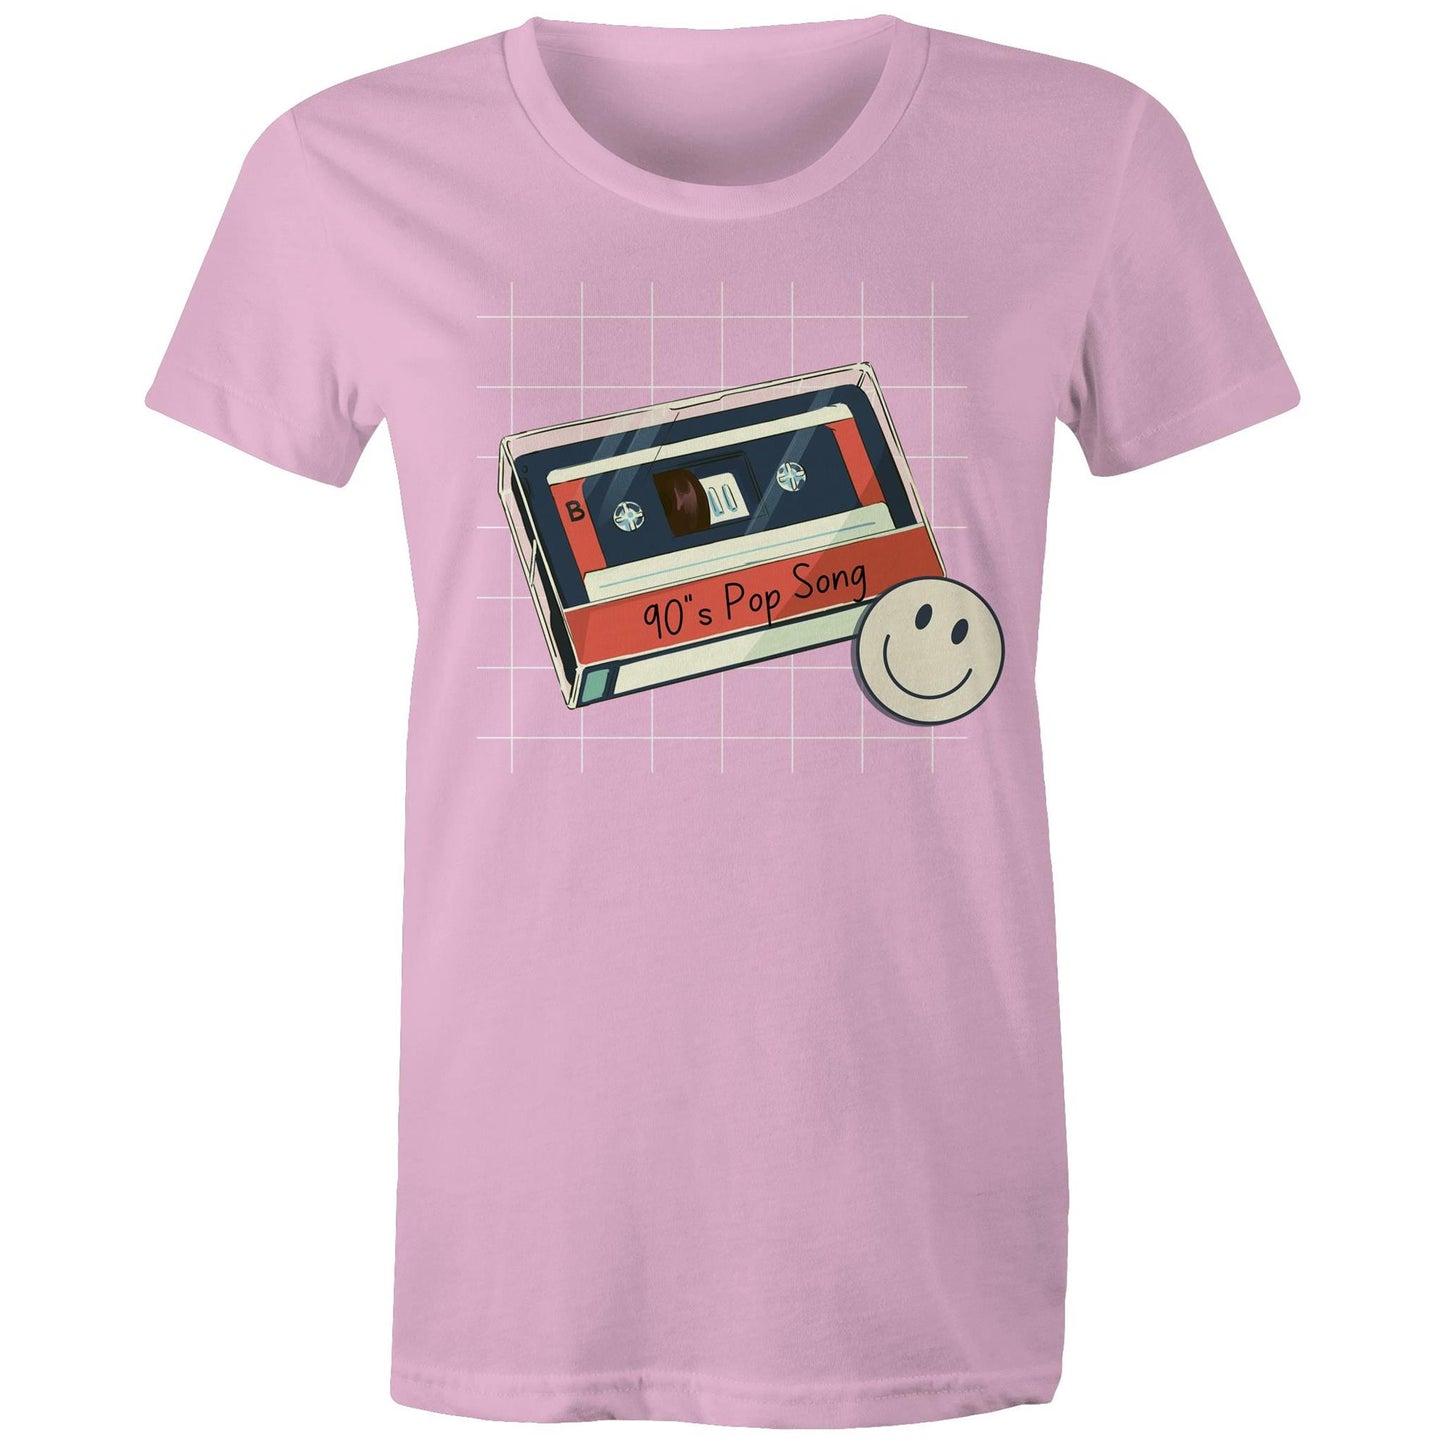 90's Pop Song - Womens T-shirt Pink Womens T-shirt Music Retro